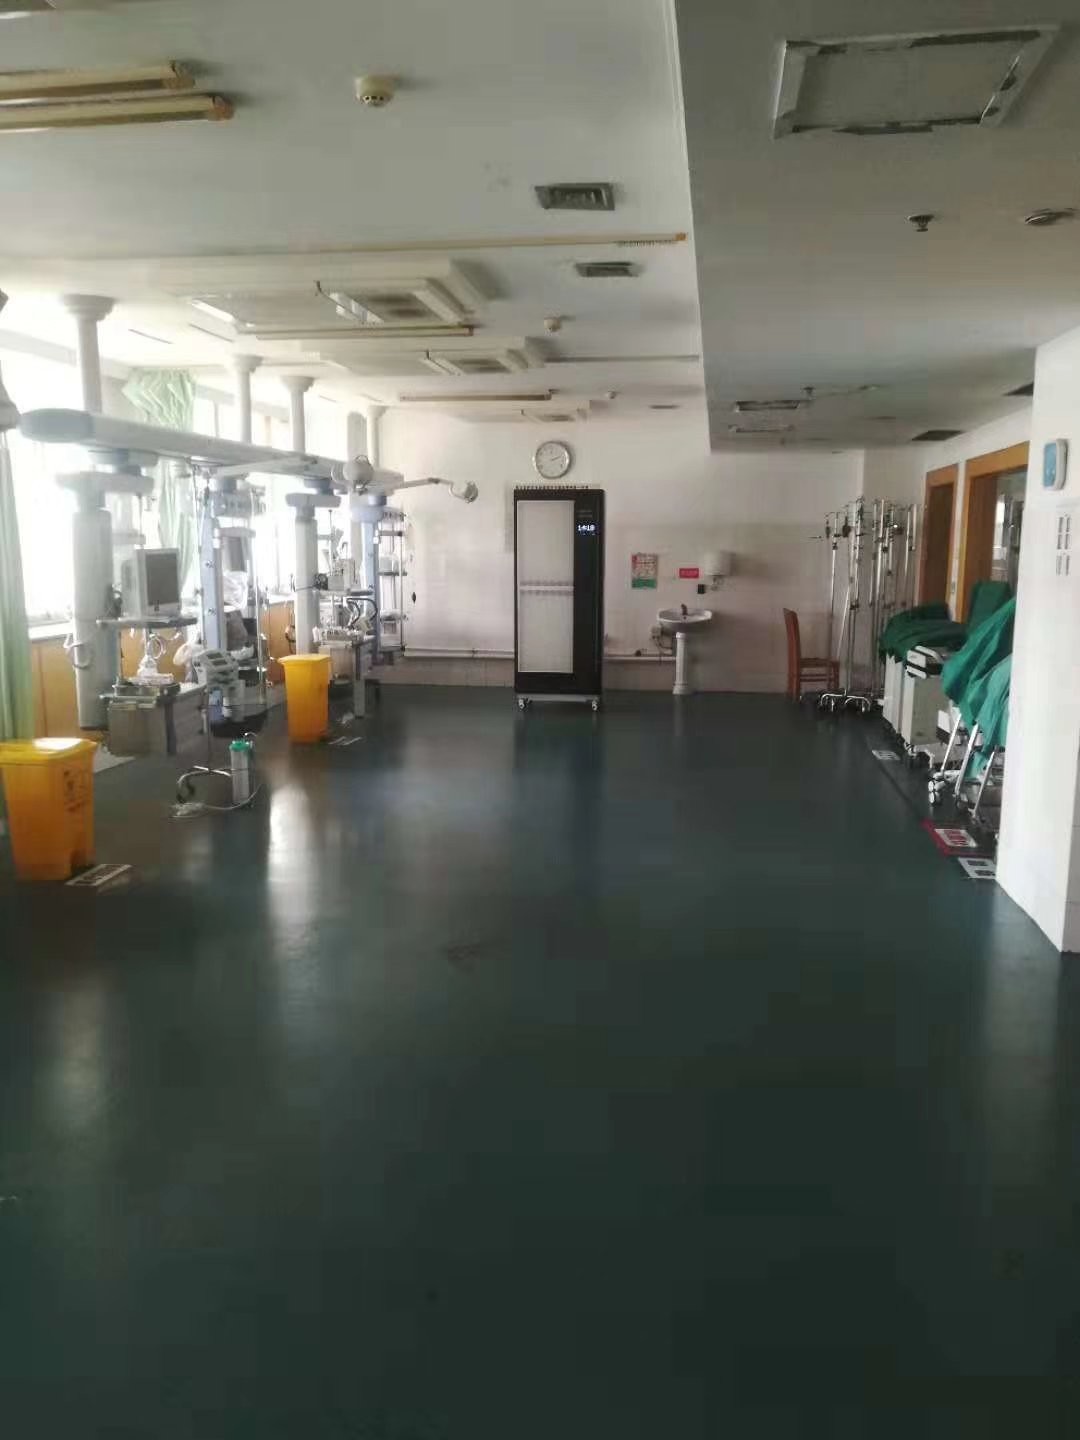 τελευταία εταιρεία περί Νοσοκομείο των ανθρώπων πόλεων Zhucheng